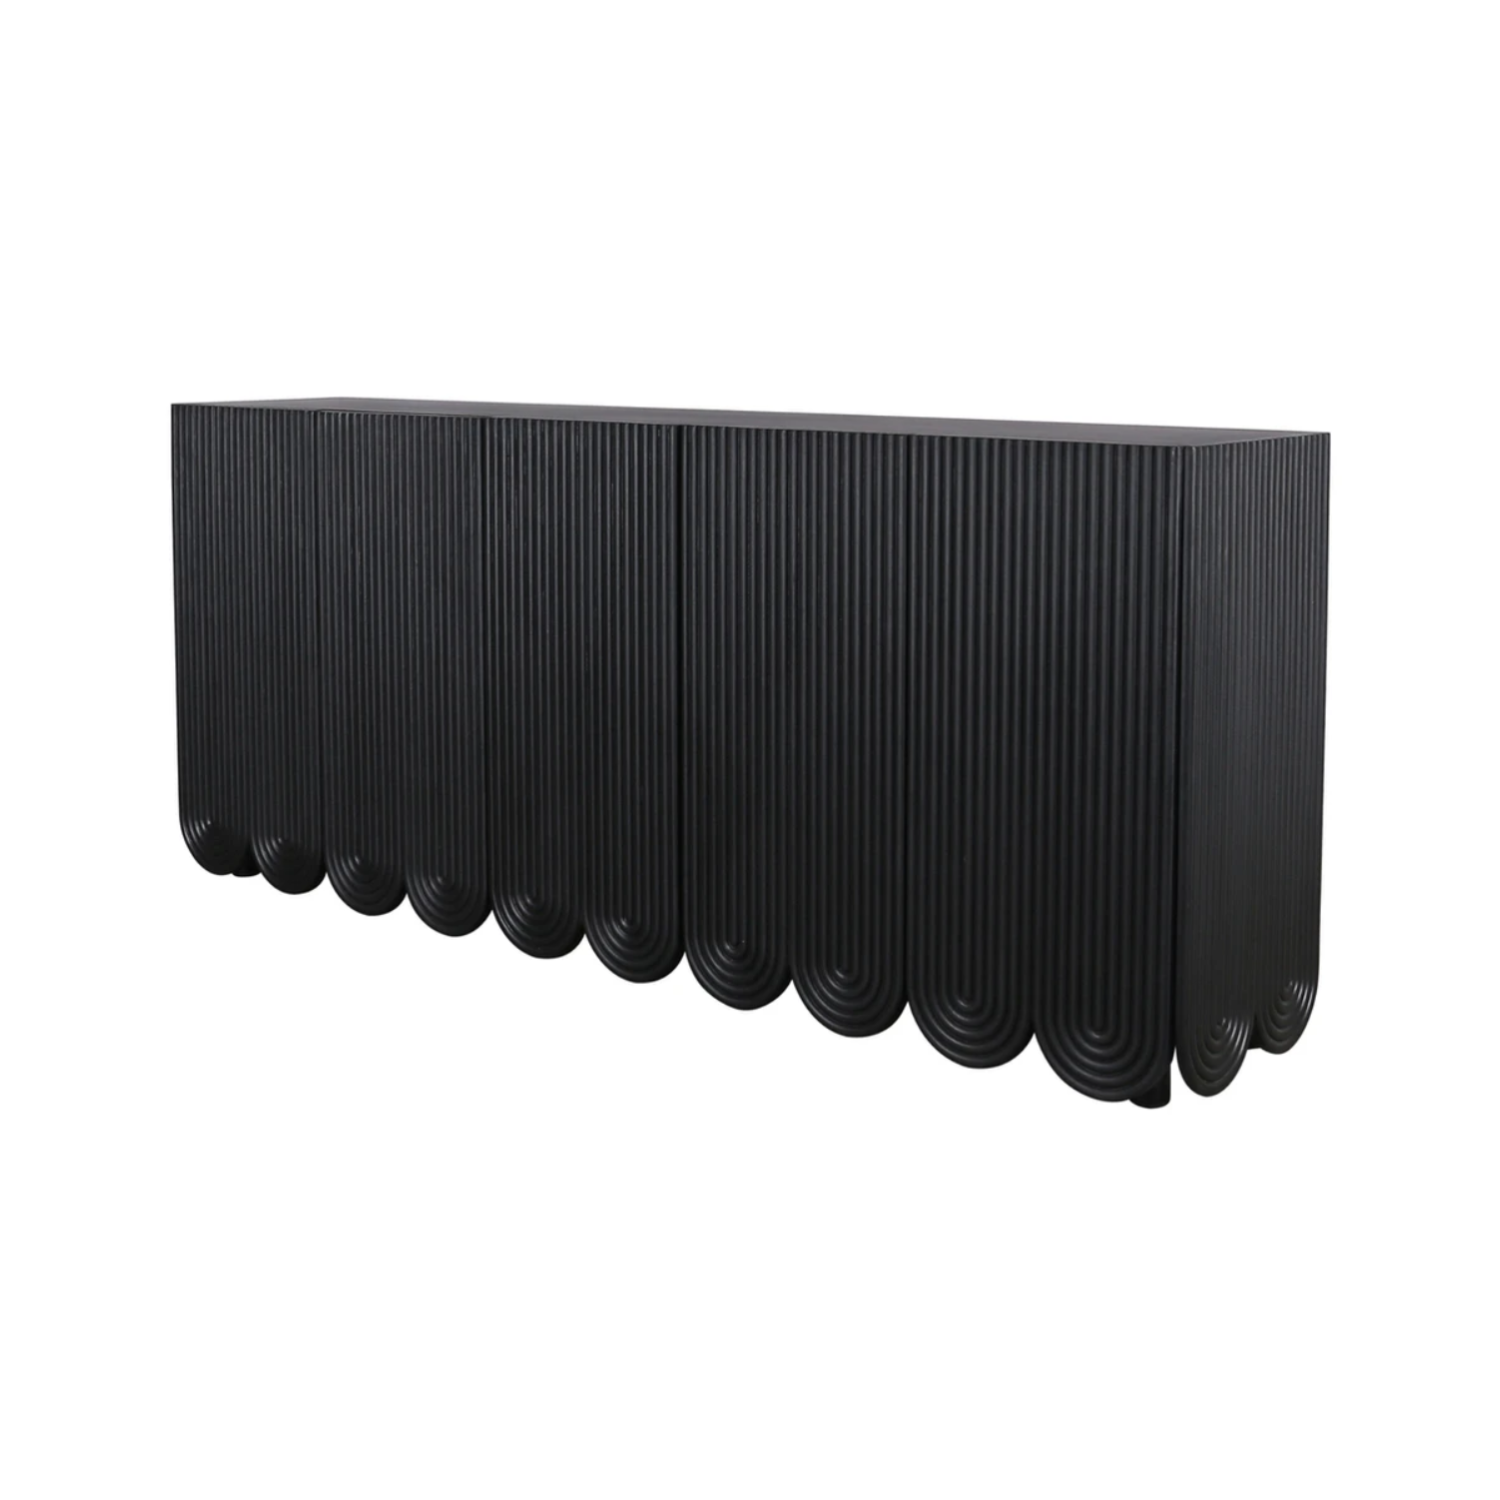 Adelle Sideboard - Large Black